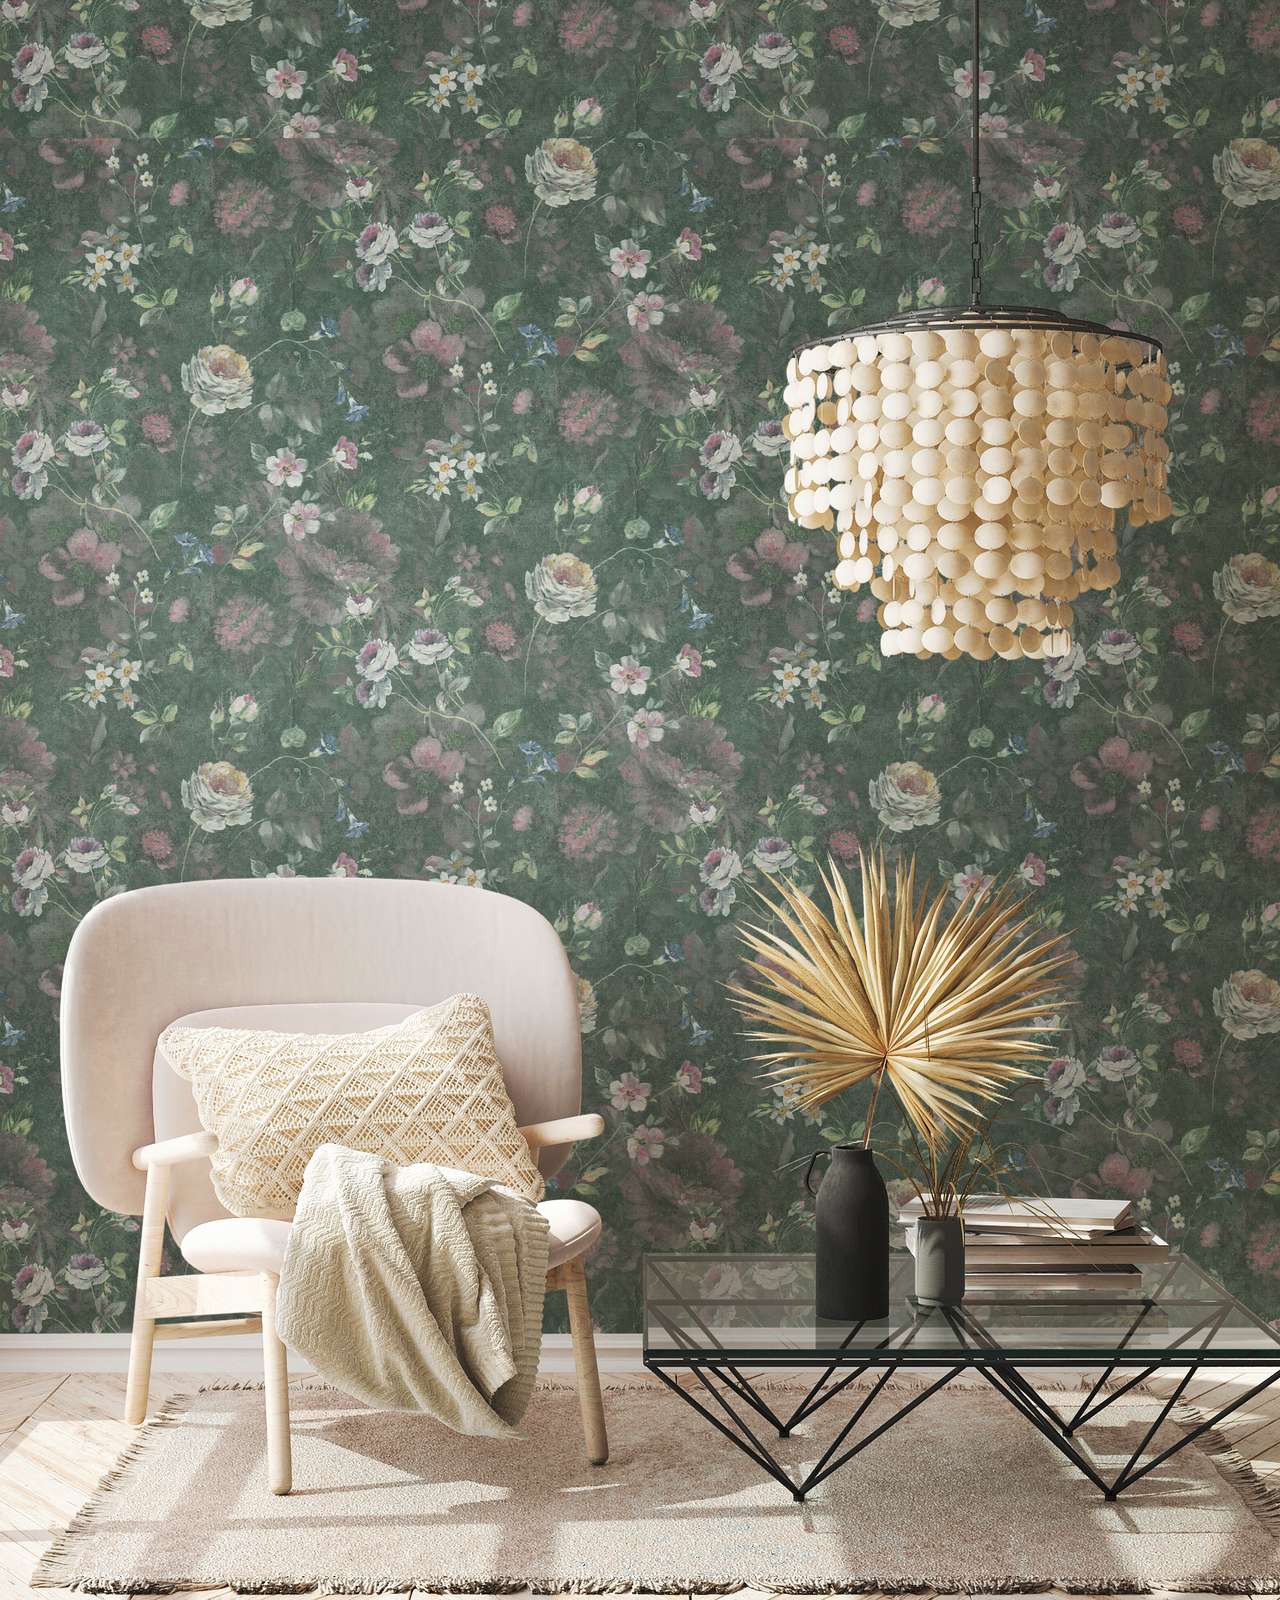             Papier peint intissé avec motif floral peint sans PVC - vert, blanc, rose
        